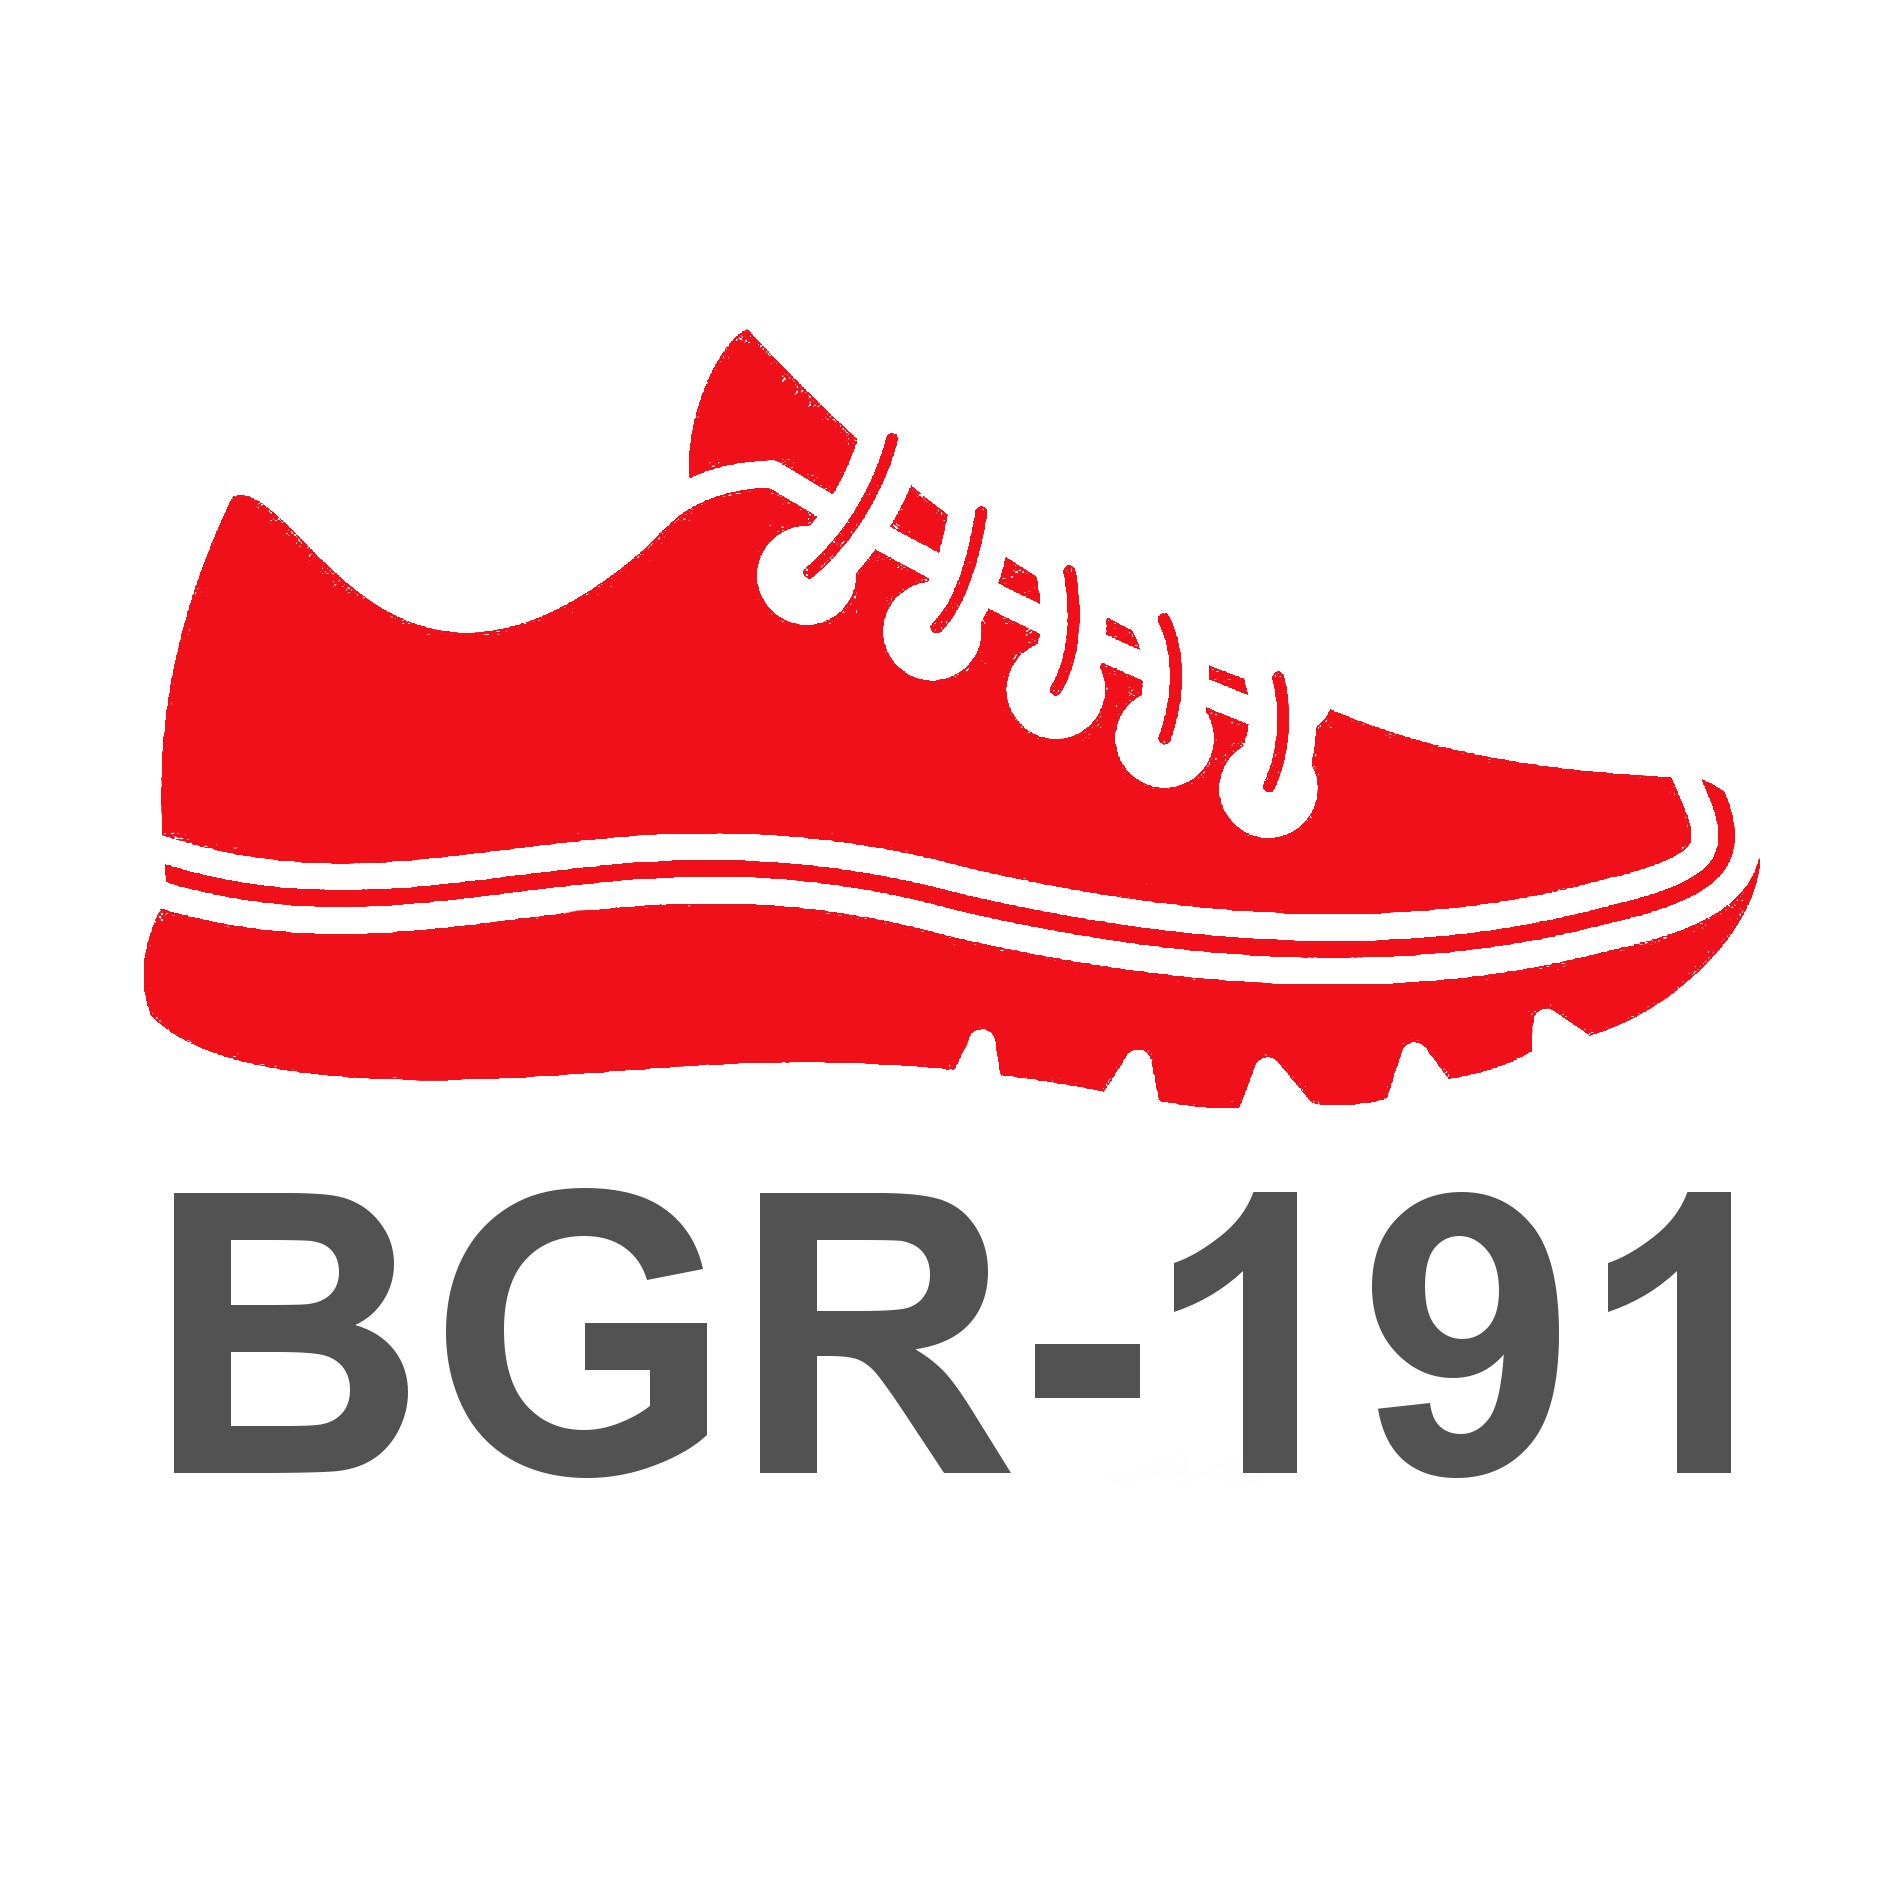 BGR191